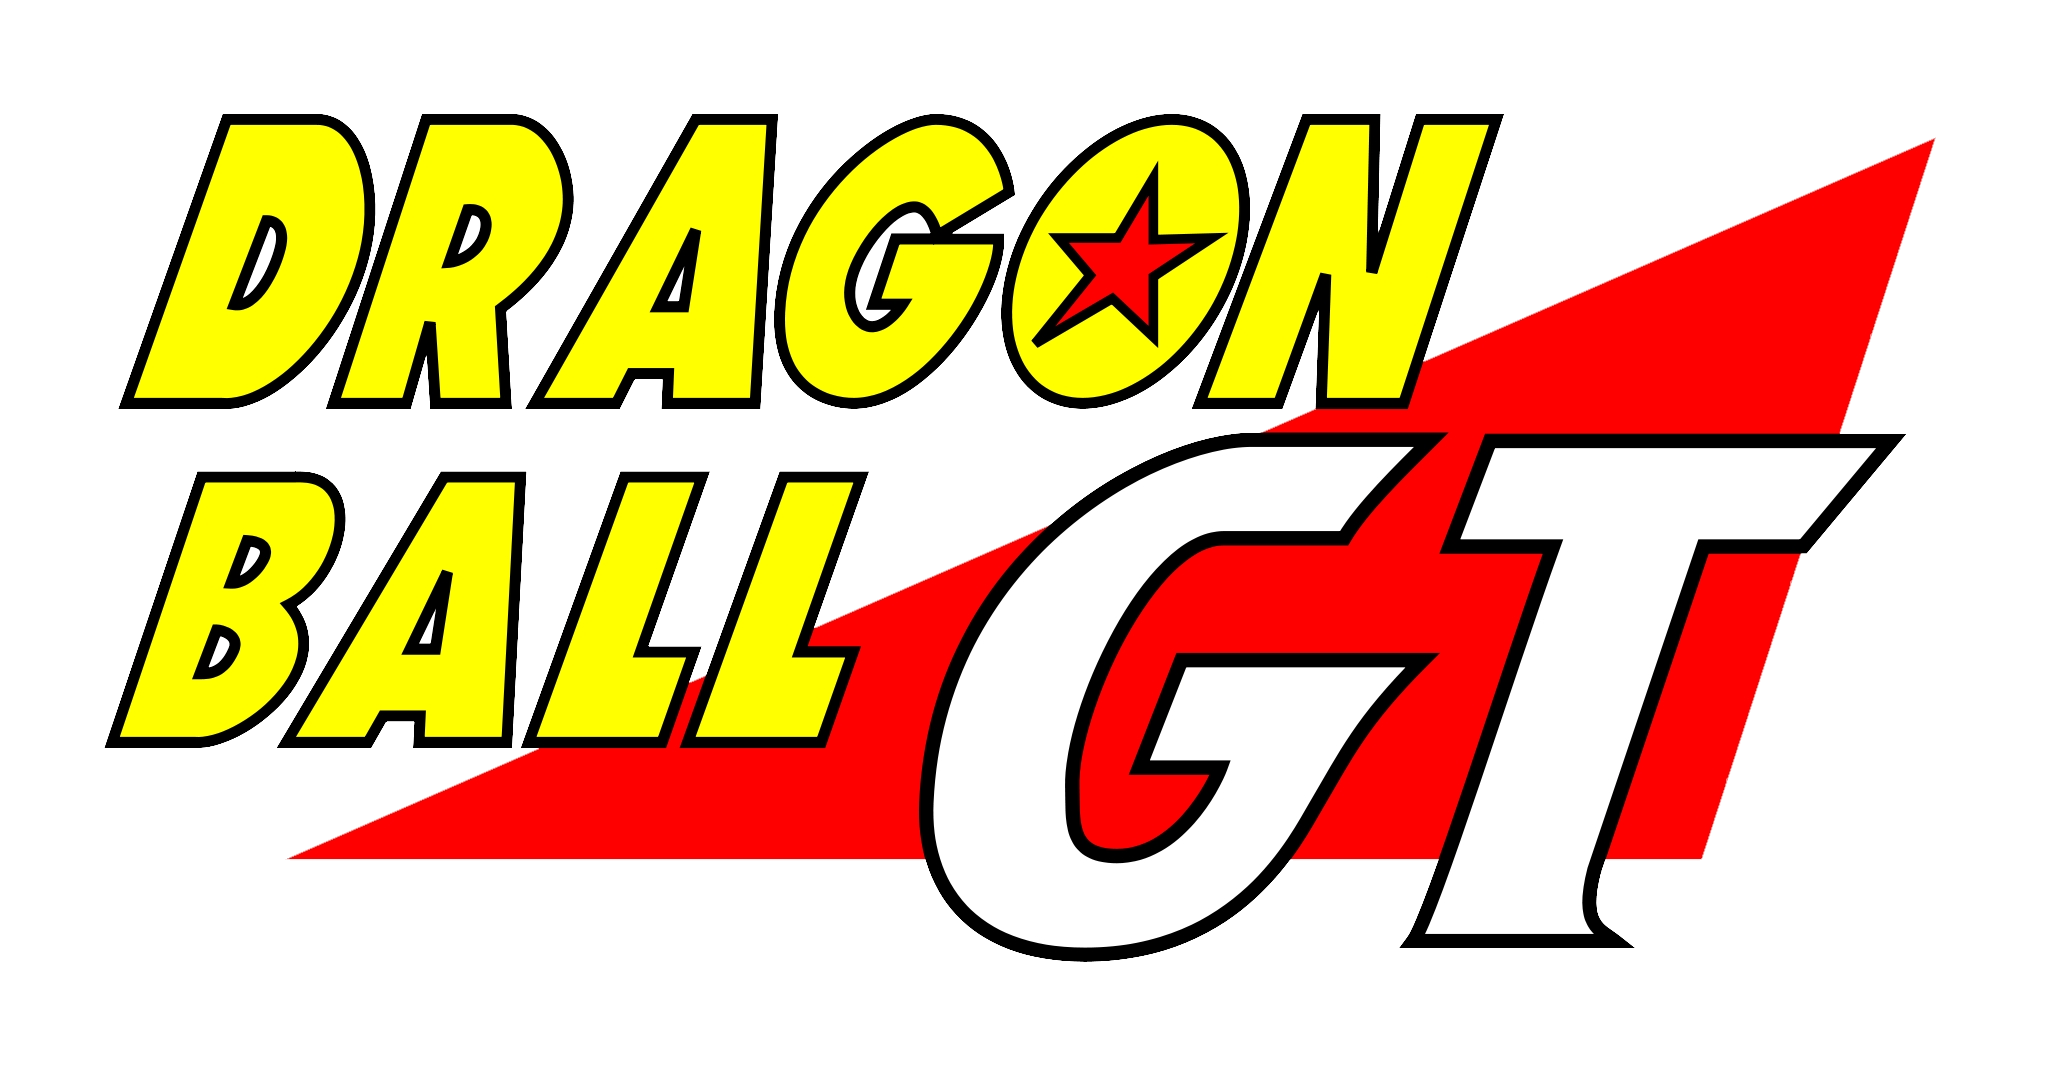 ドラゴンボールGT - Wikipedia